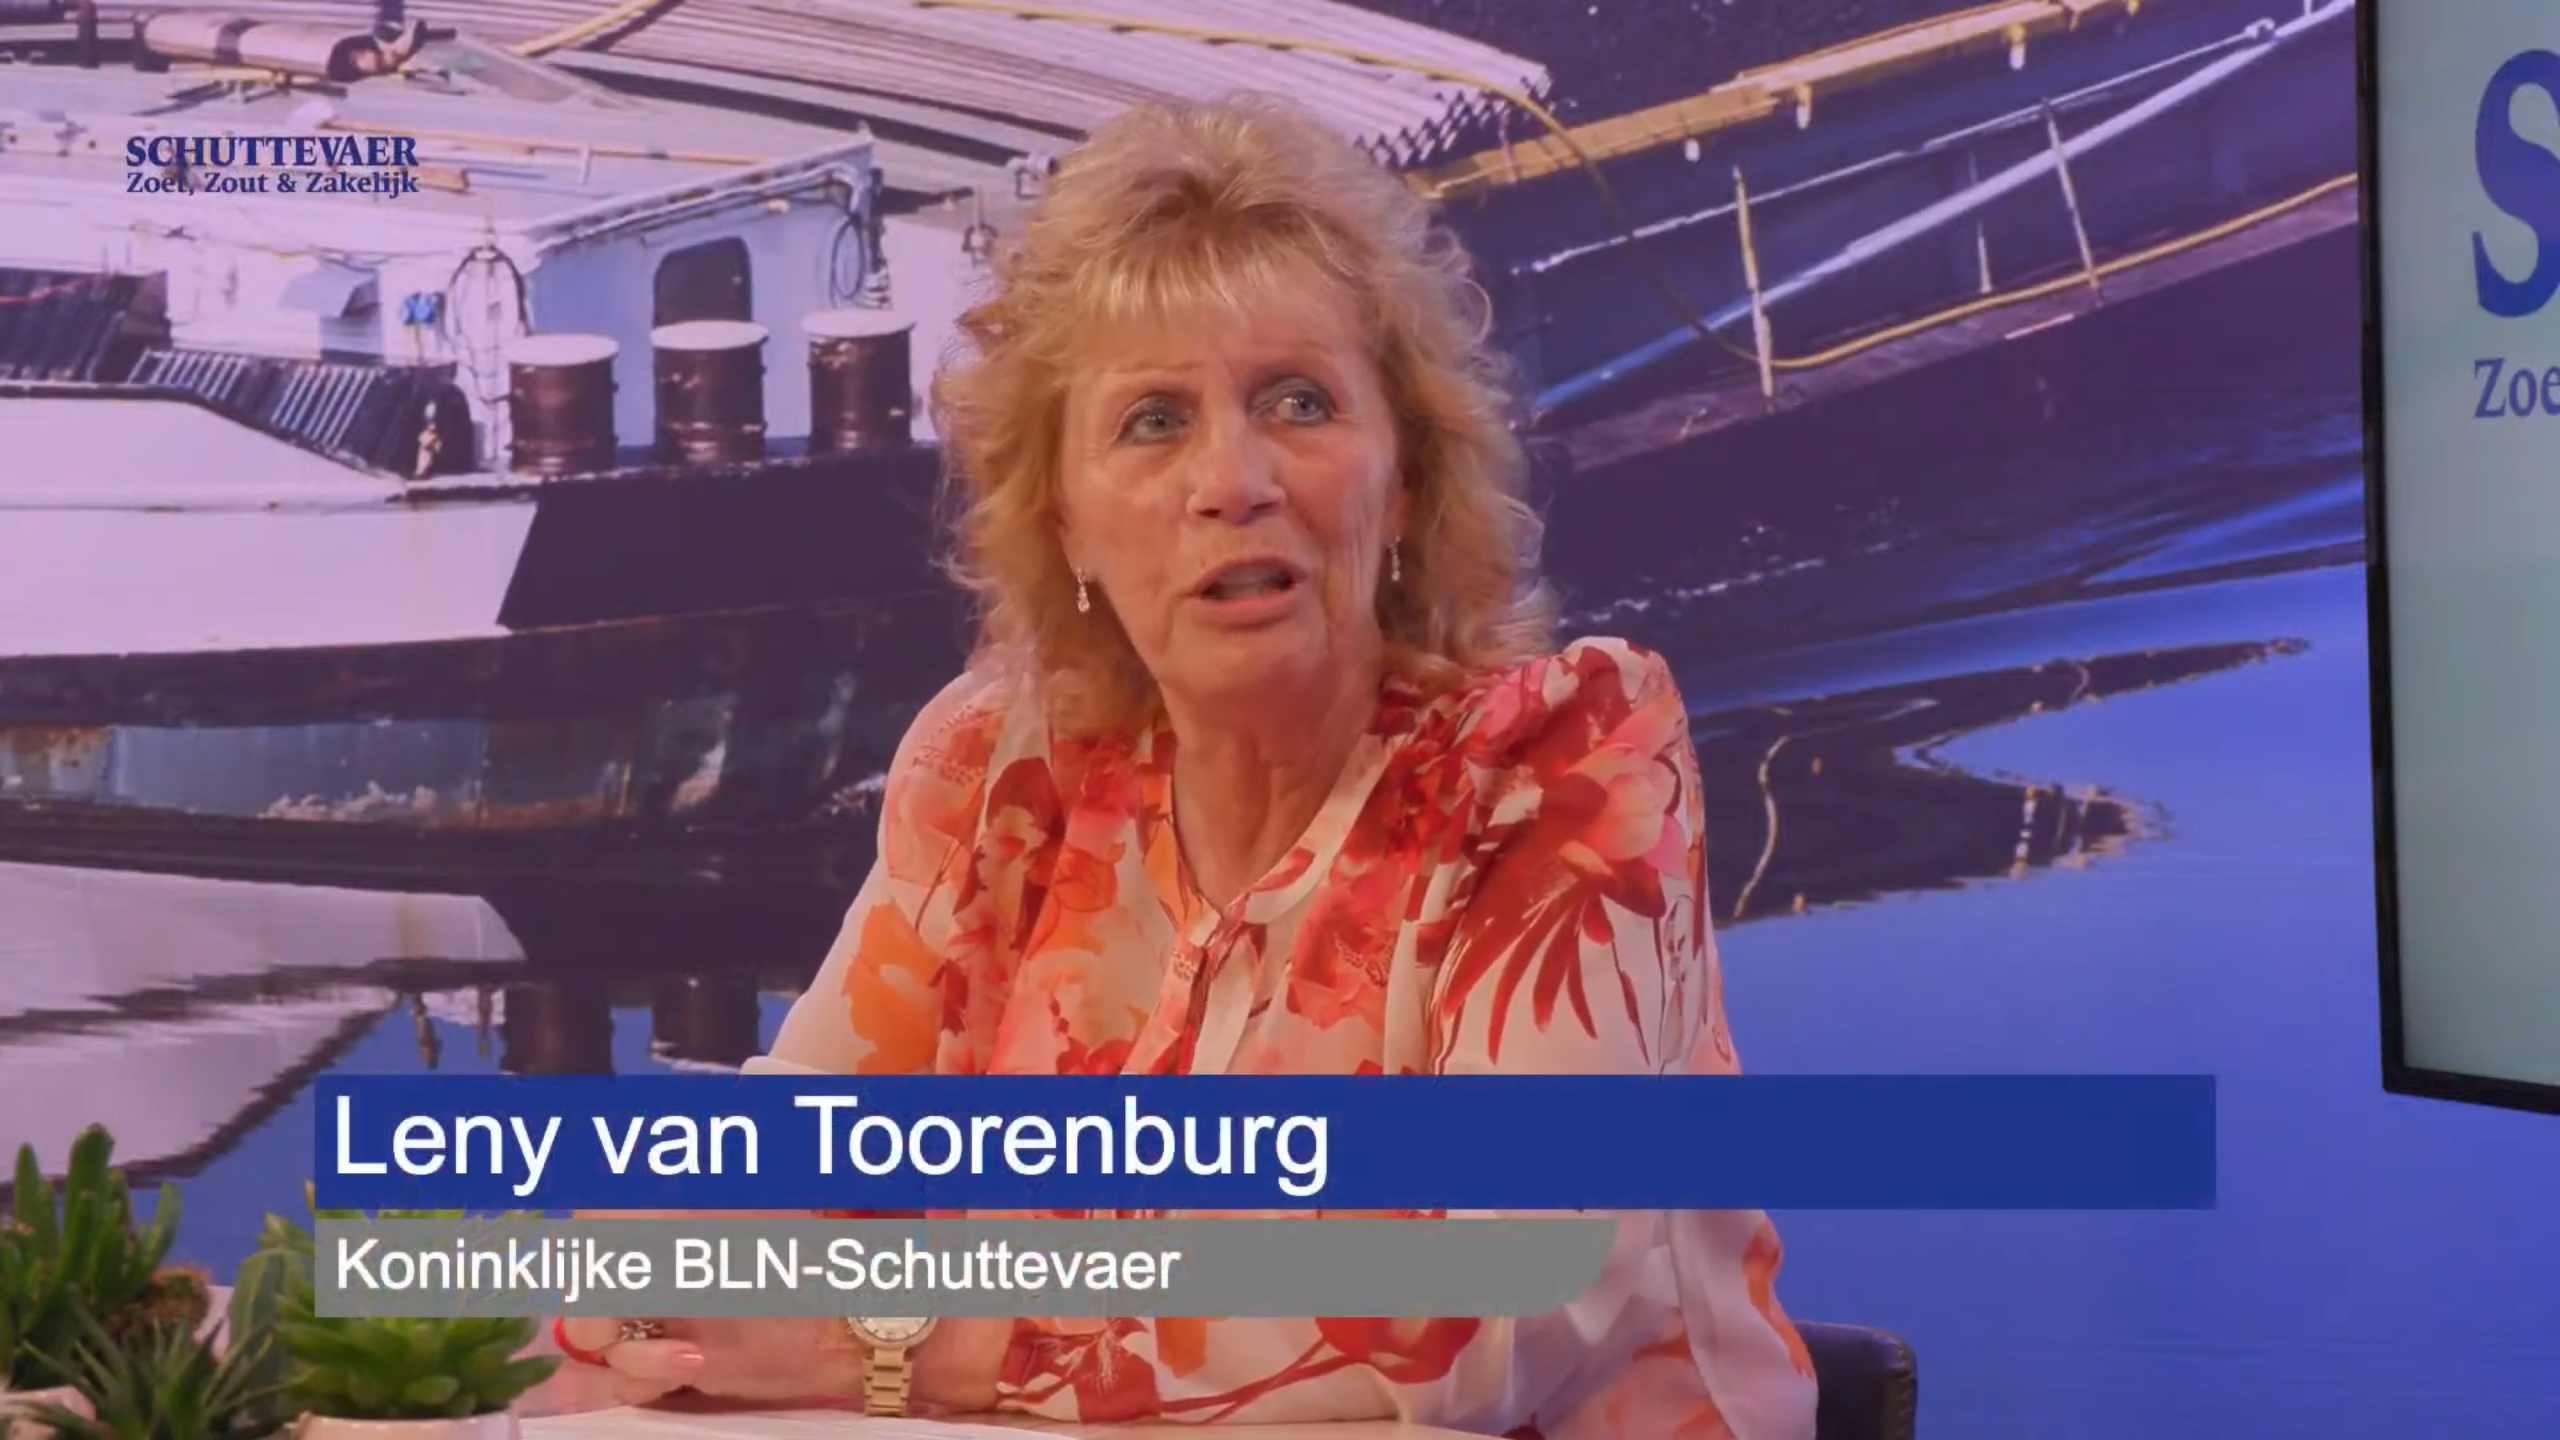 Leny van Toorenburg, Hoofd Nautisch-Technische zaken van BLN-Schuttevaer, was aanwezig in de studio.